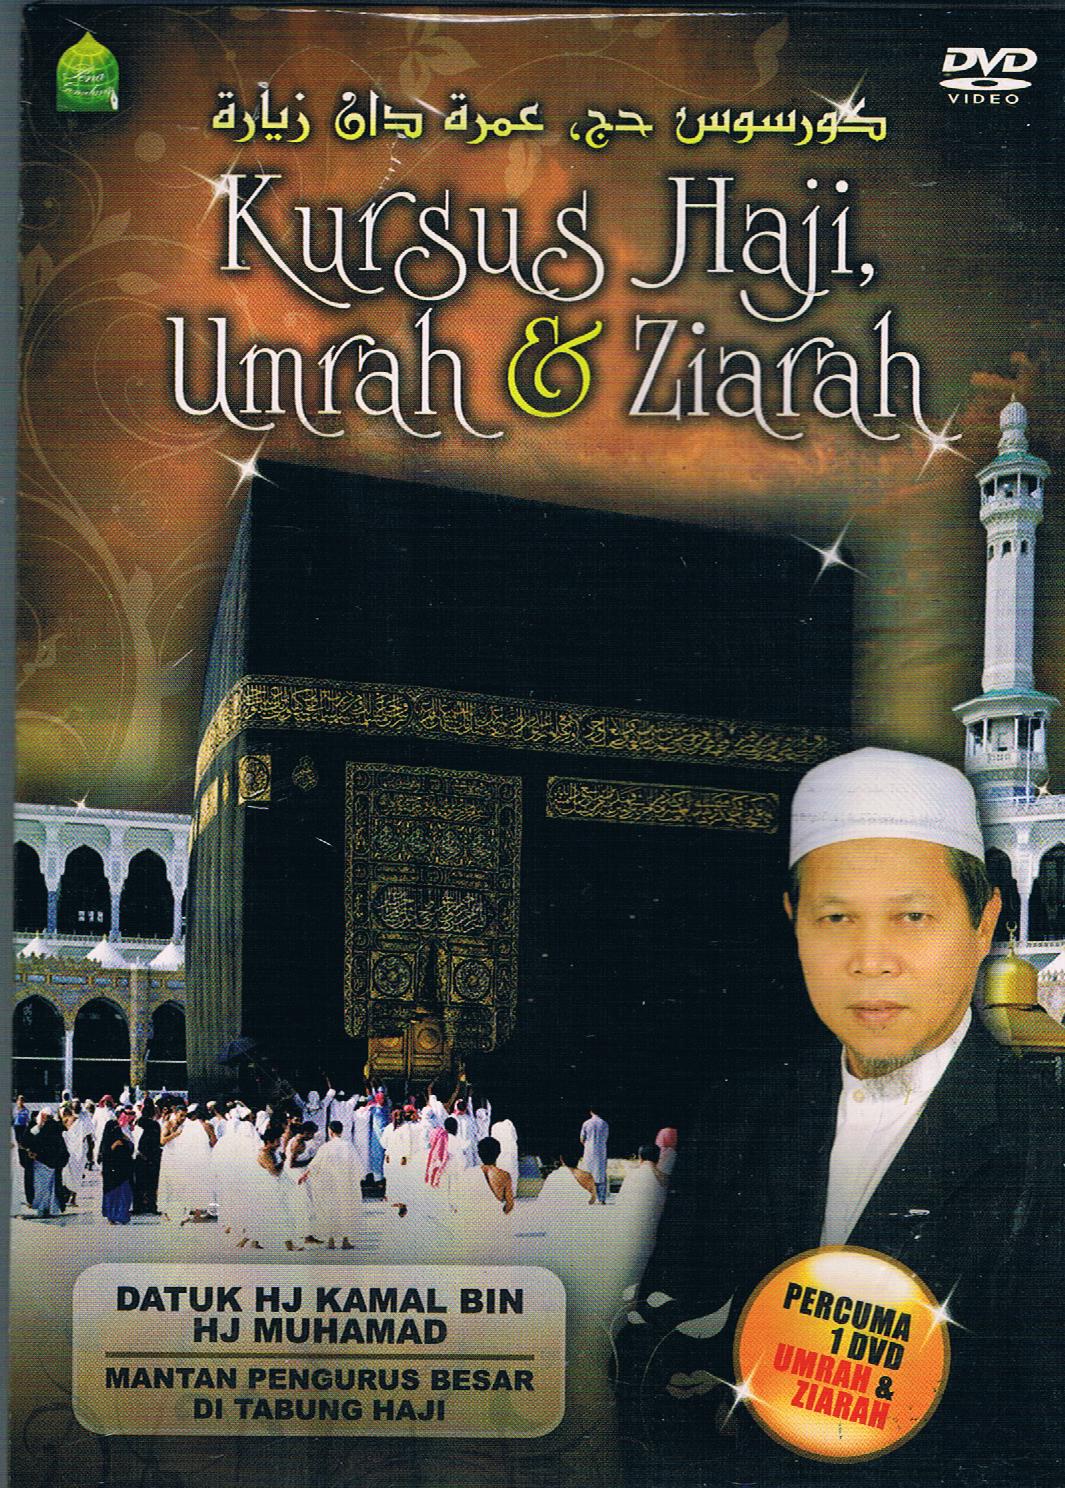 Pustaka Iman: Kursus Haji, Umrah & Ziarah (DVD)